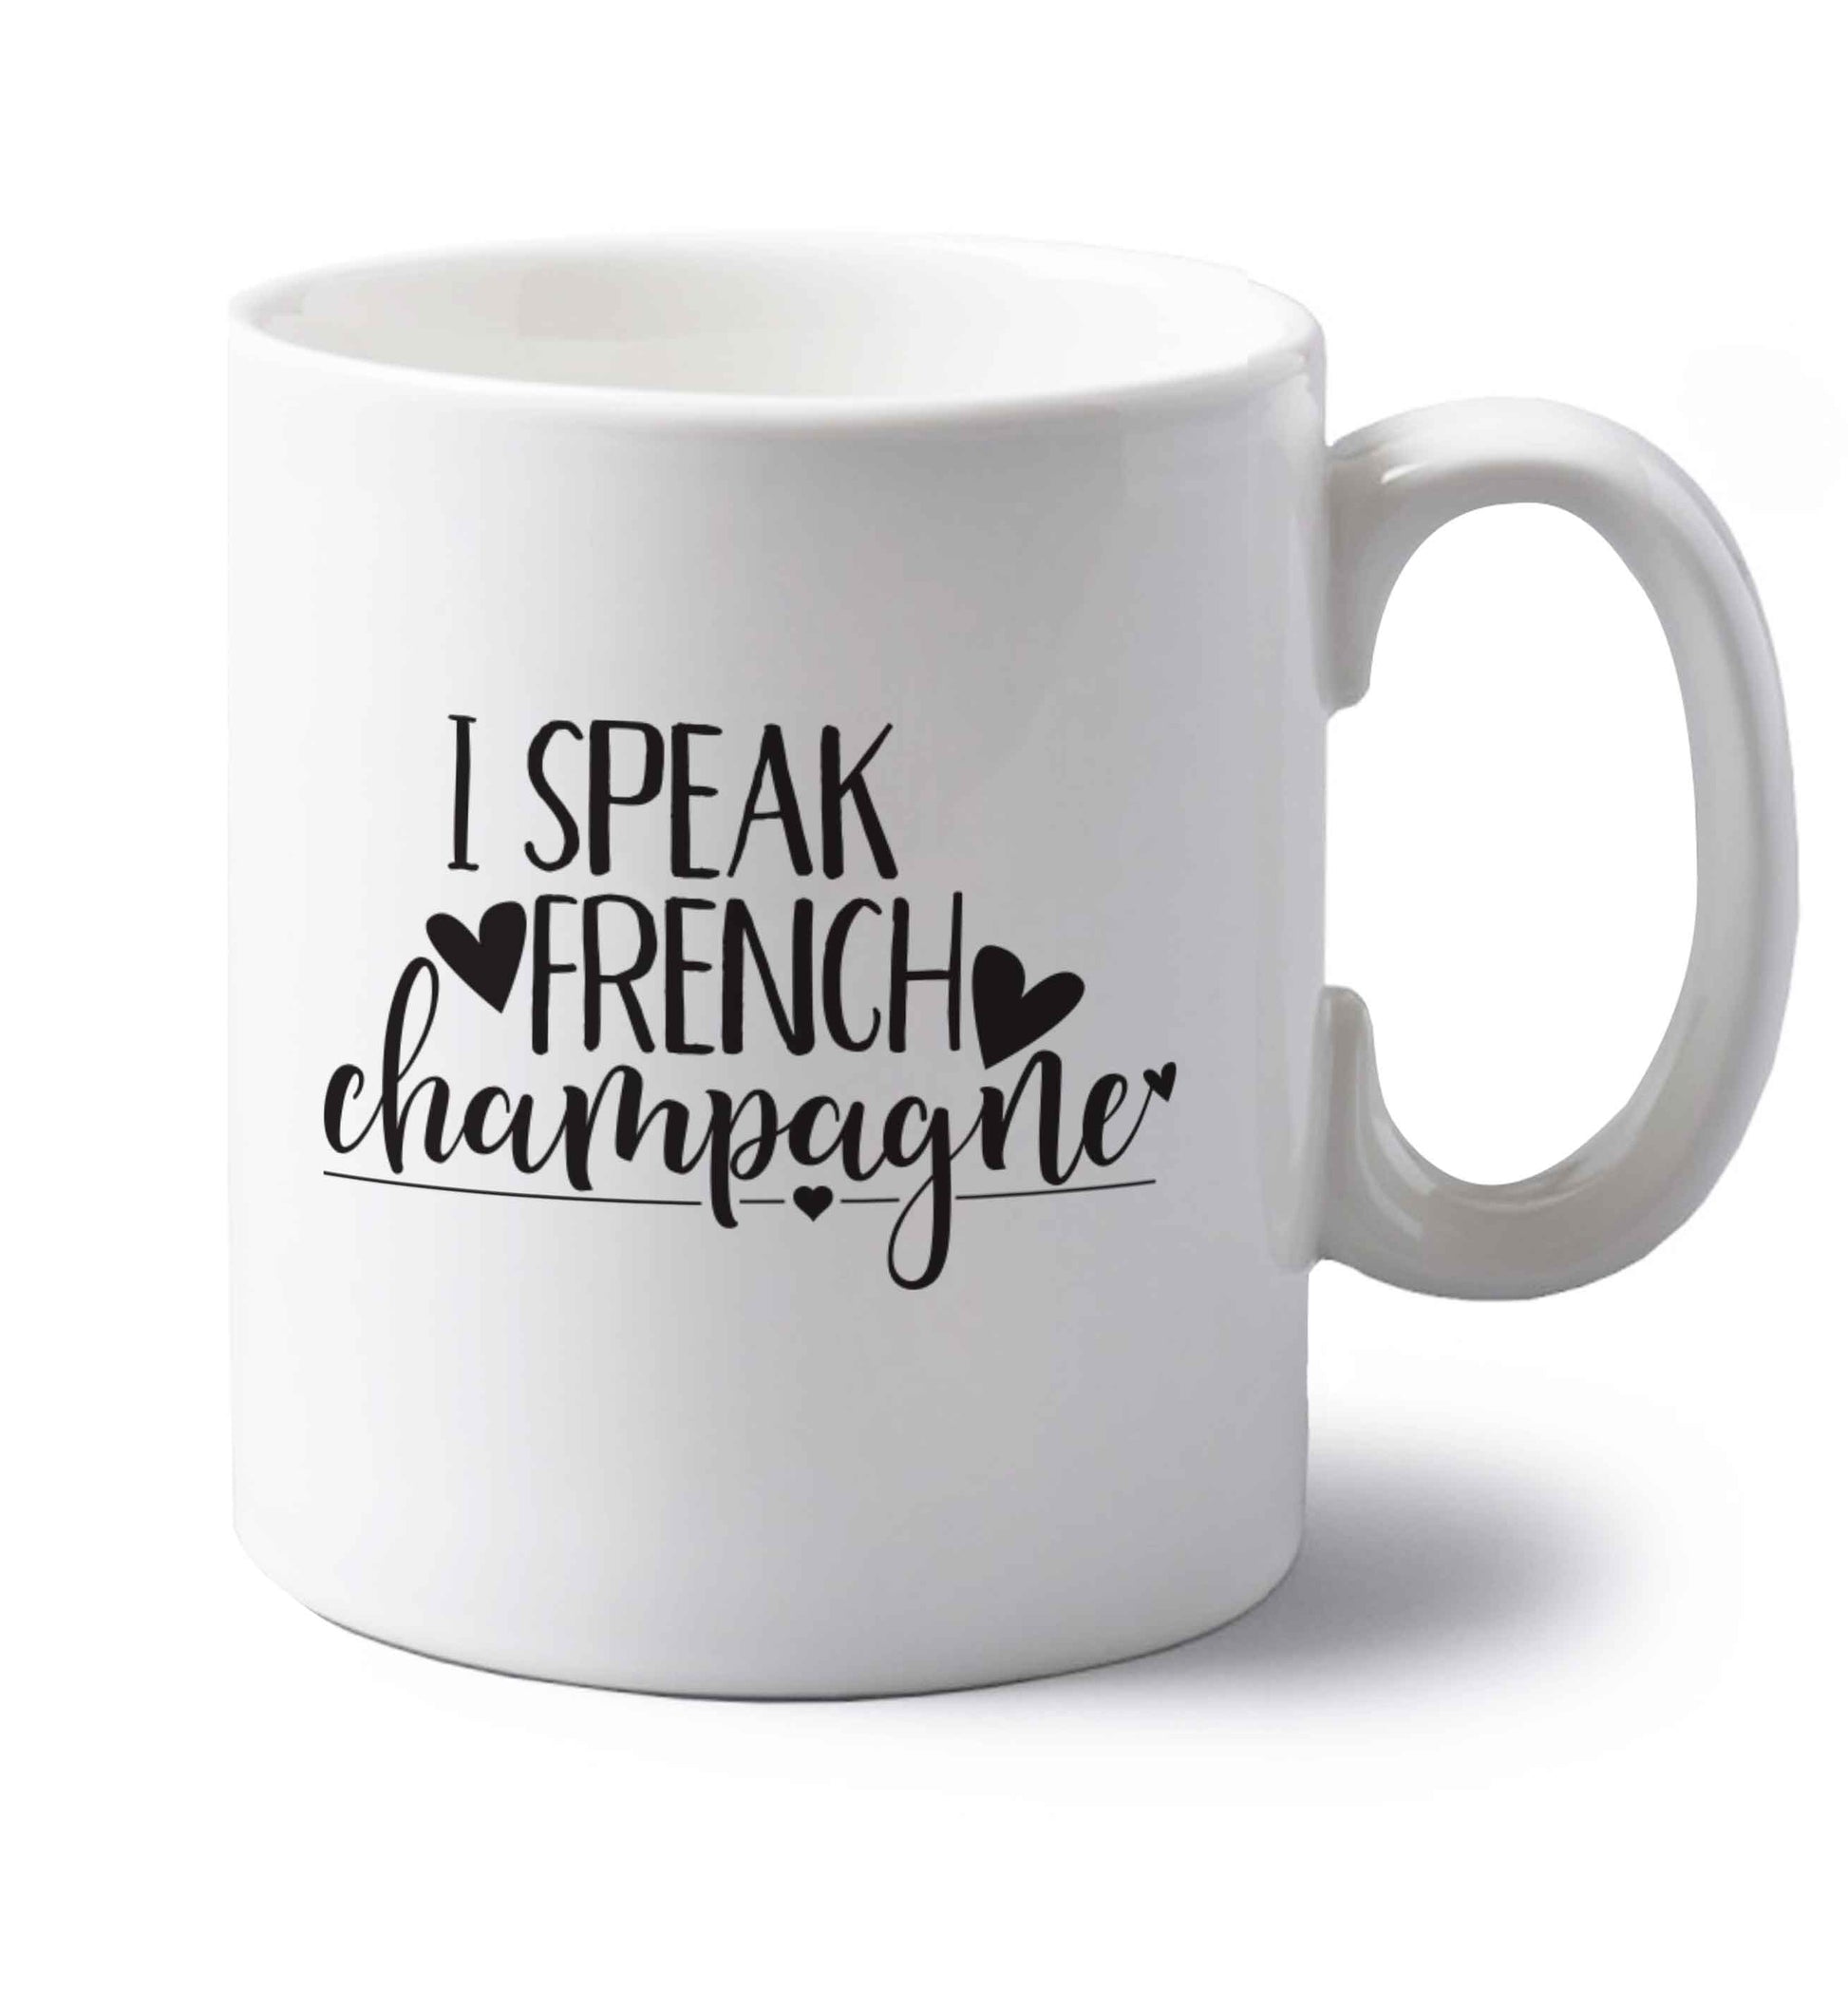 I speak french champagne left handed white ceramic mug 